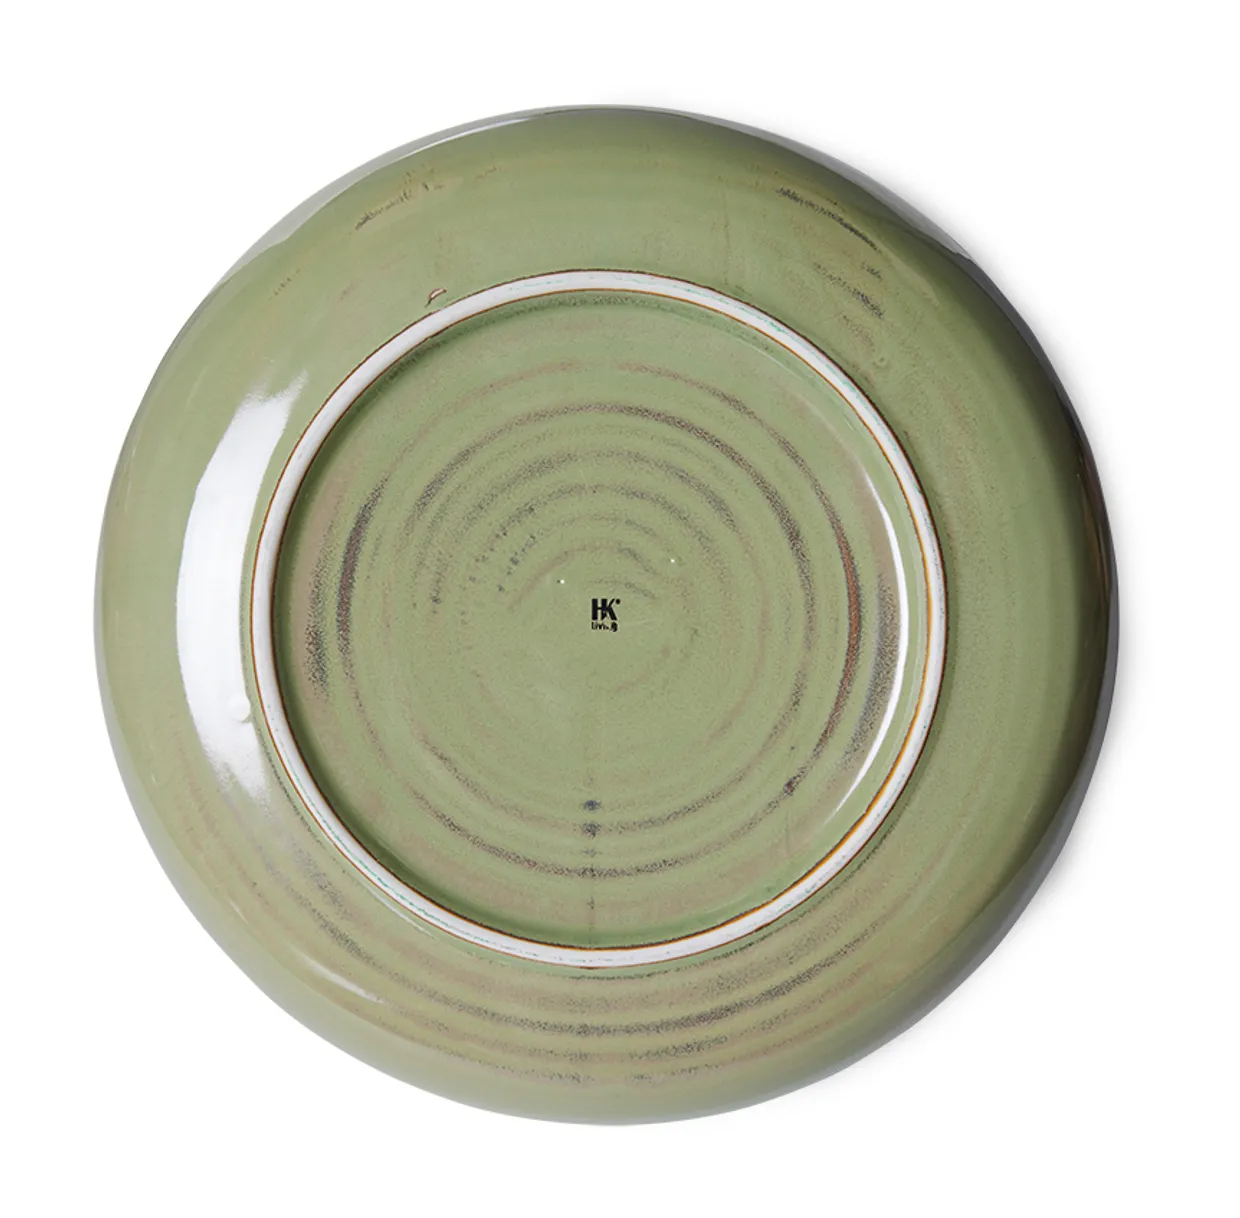 Chef ceramics: deep plate M, moss green